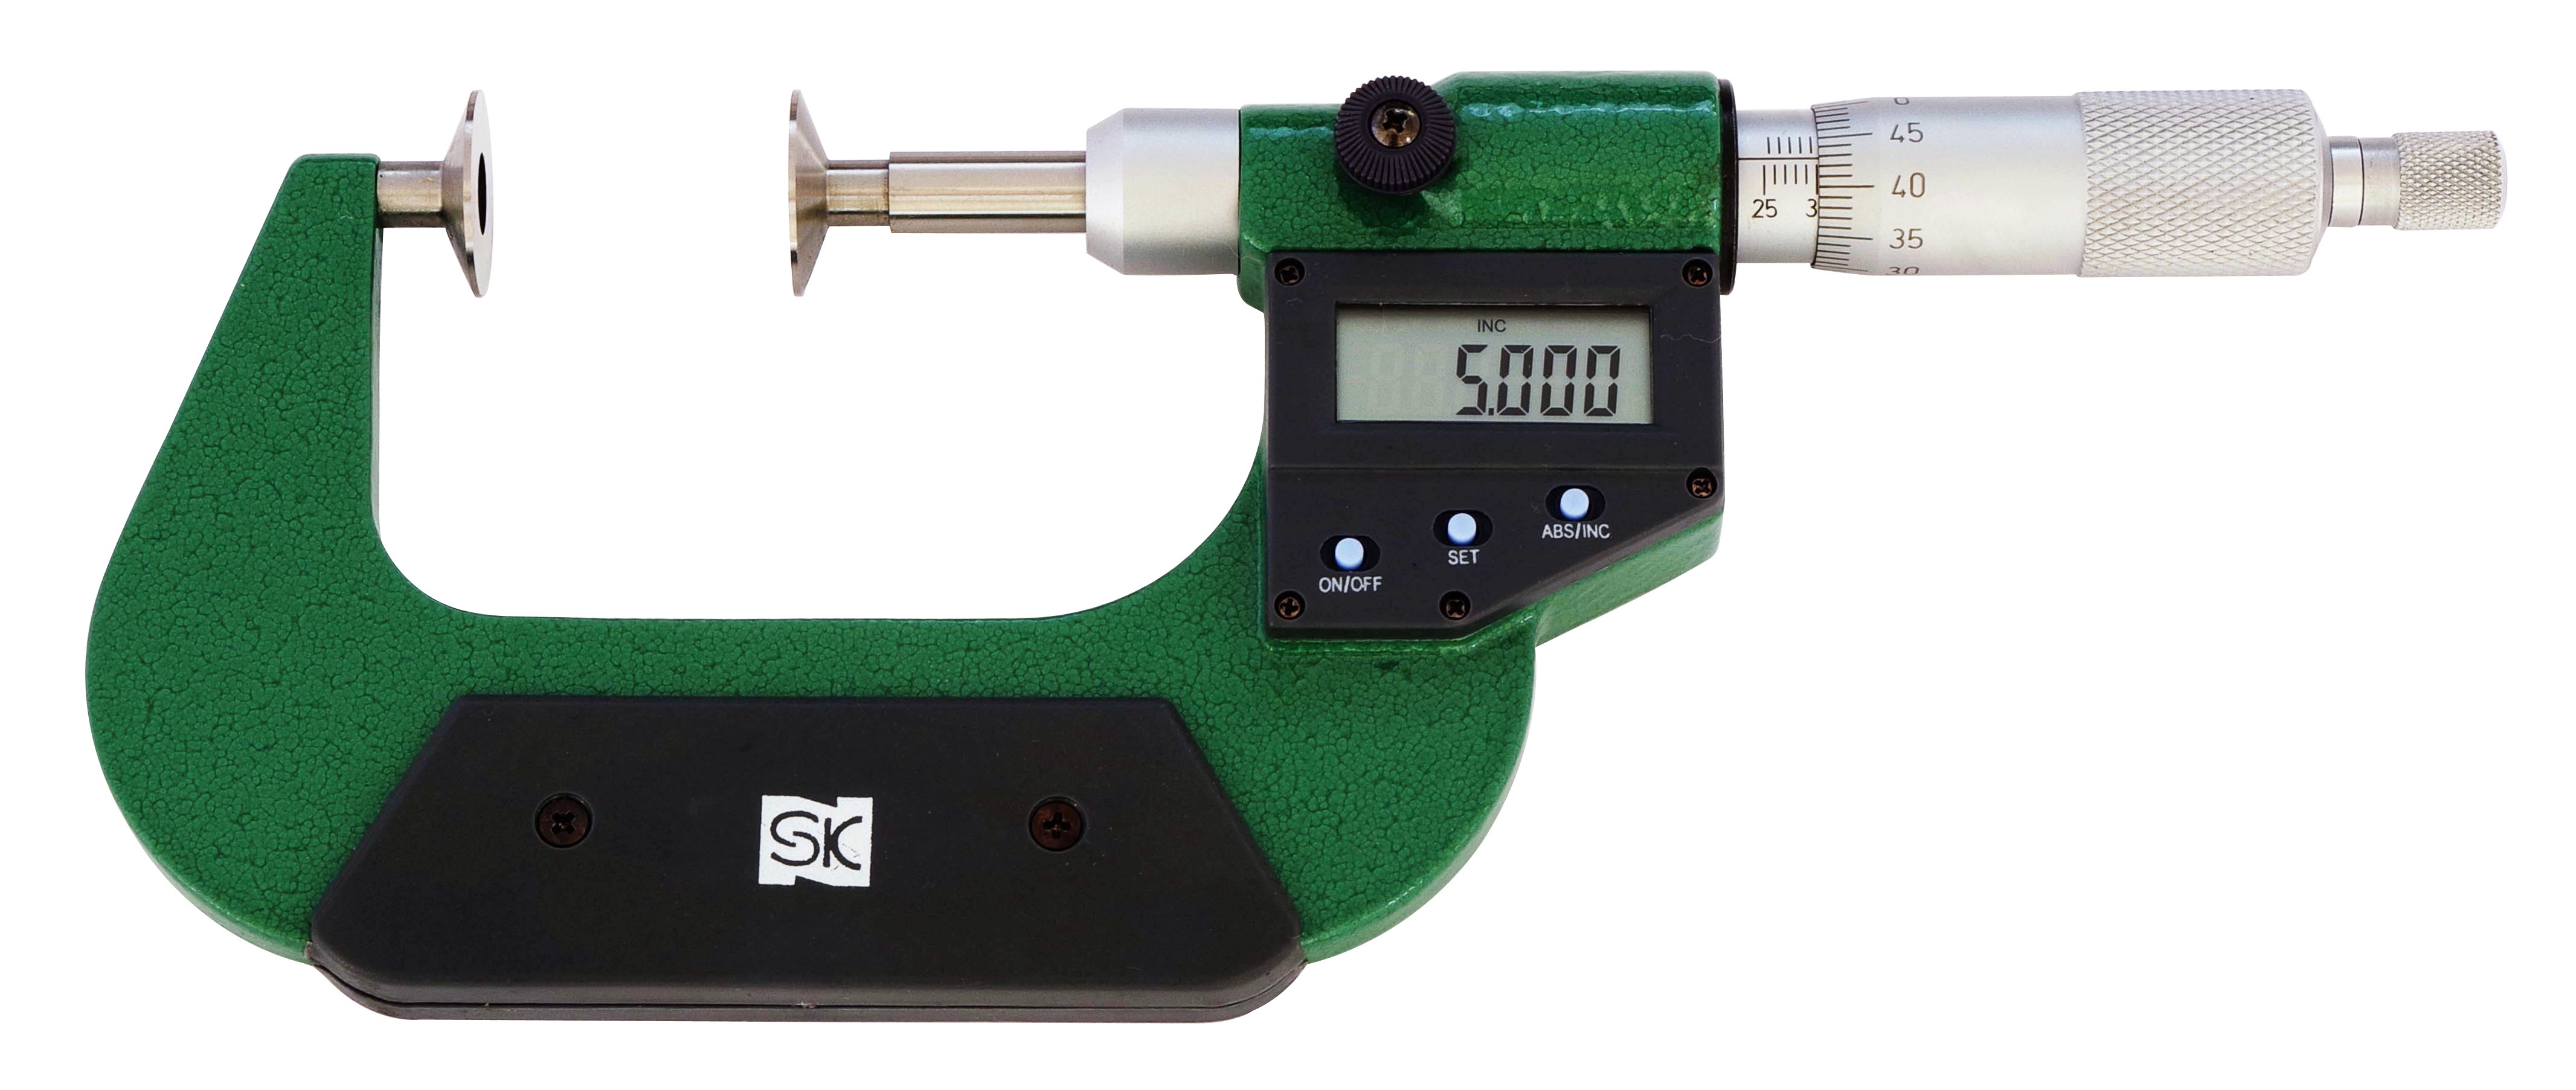 のまたぎ 新潟精機 SK デジタル歯厚マイクロメーター 直進式 0-25mm MCD230-25D のまたぎ